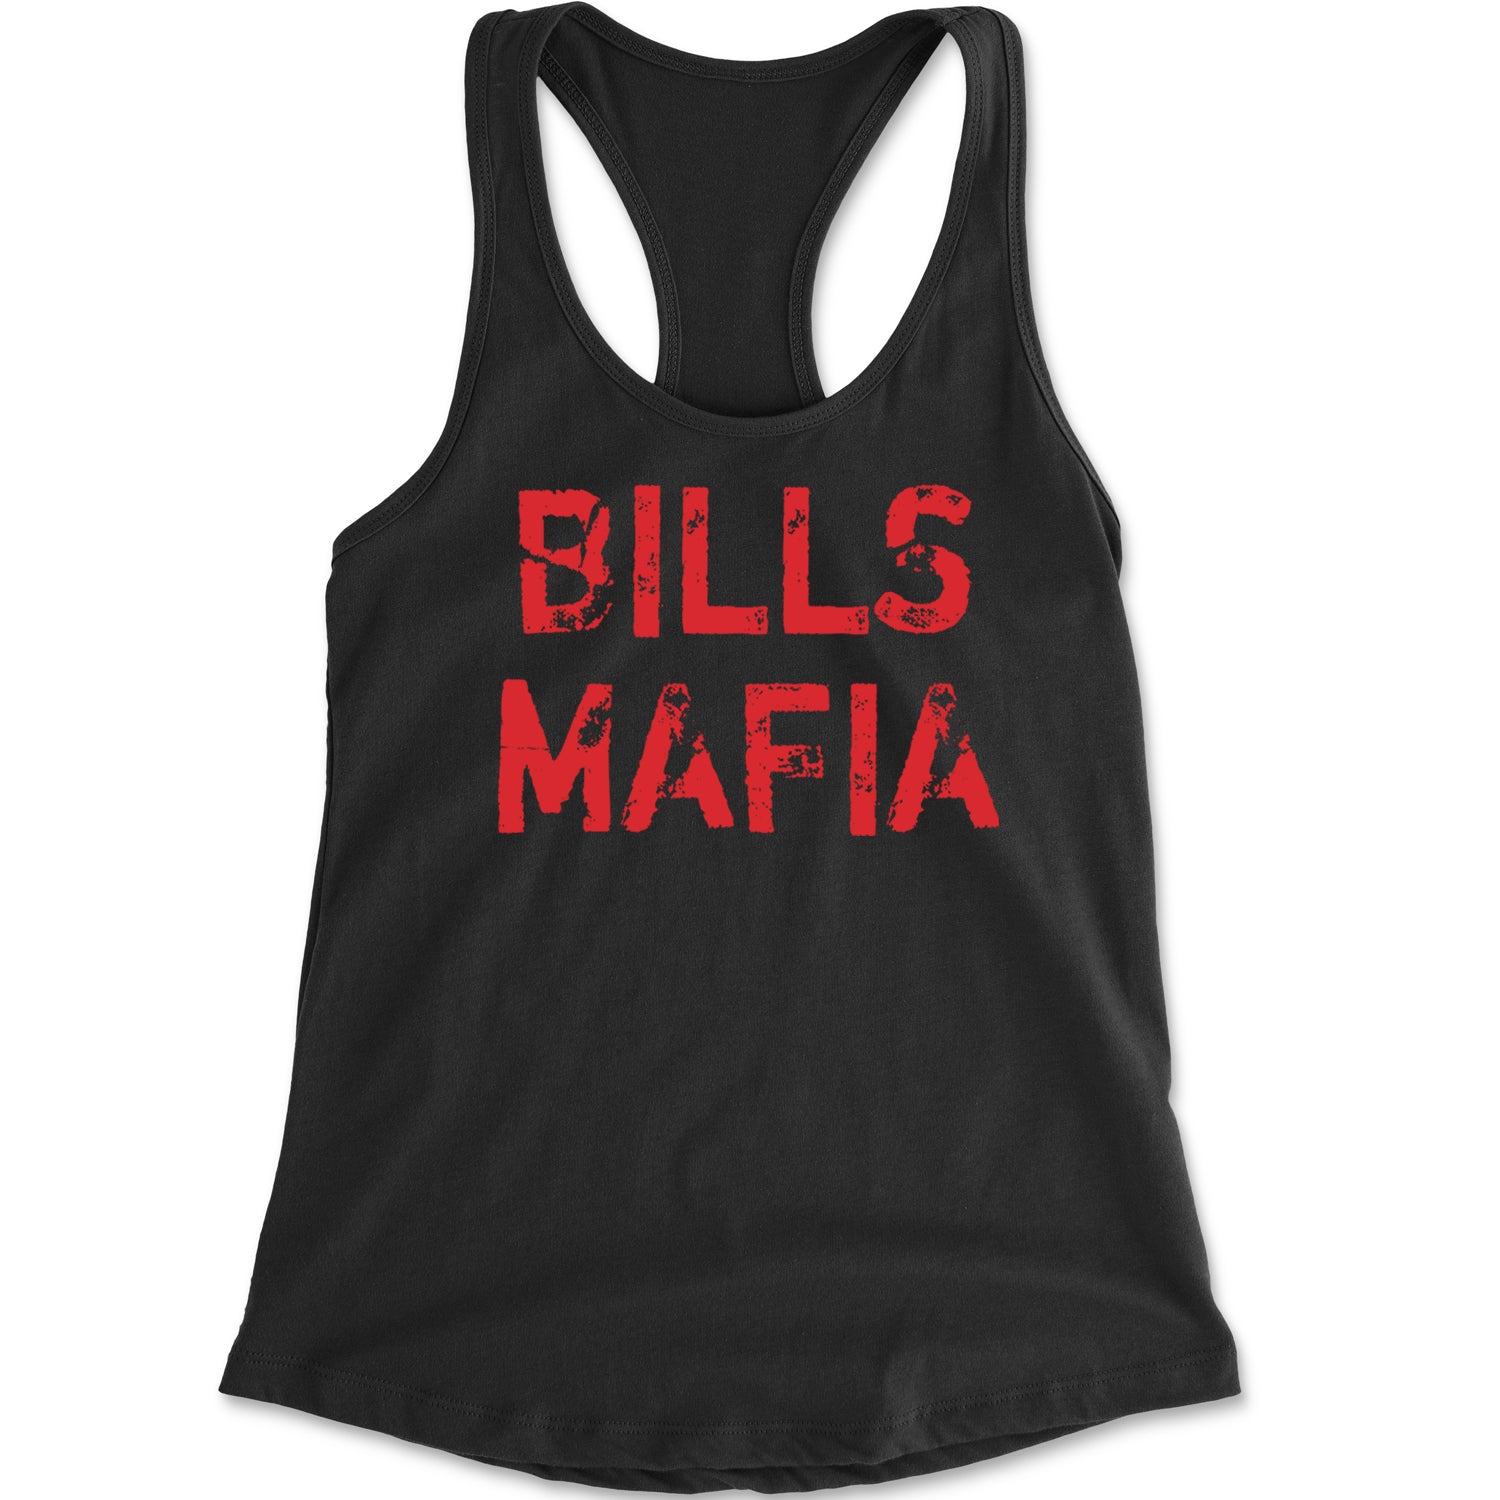 Distressed Bills Mafia Football Racerback Tank Top for Women